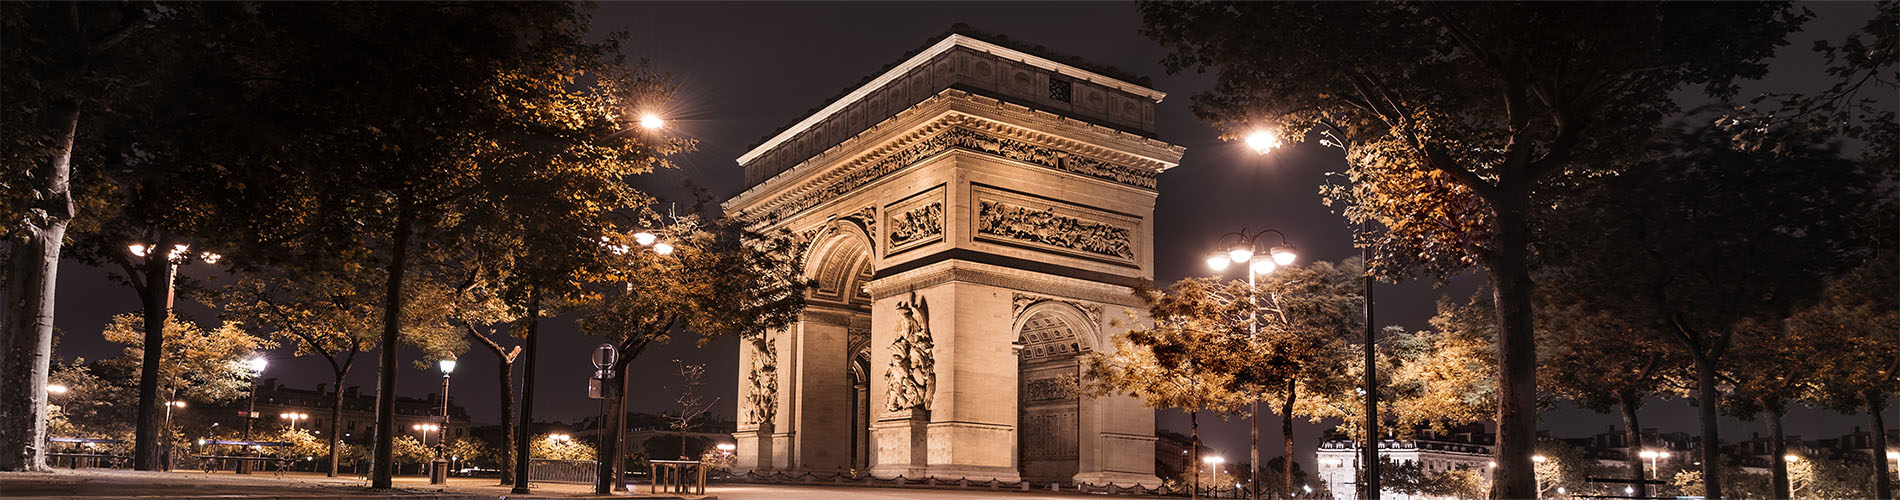 L'AVENUE, Paris - 41 avenue Montaigne, 8th Arr. - Elysee